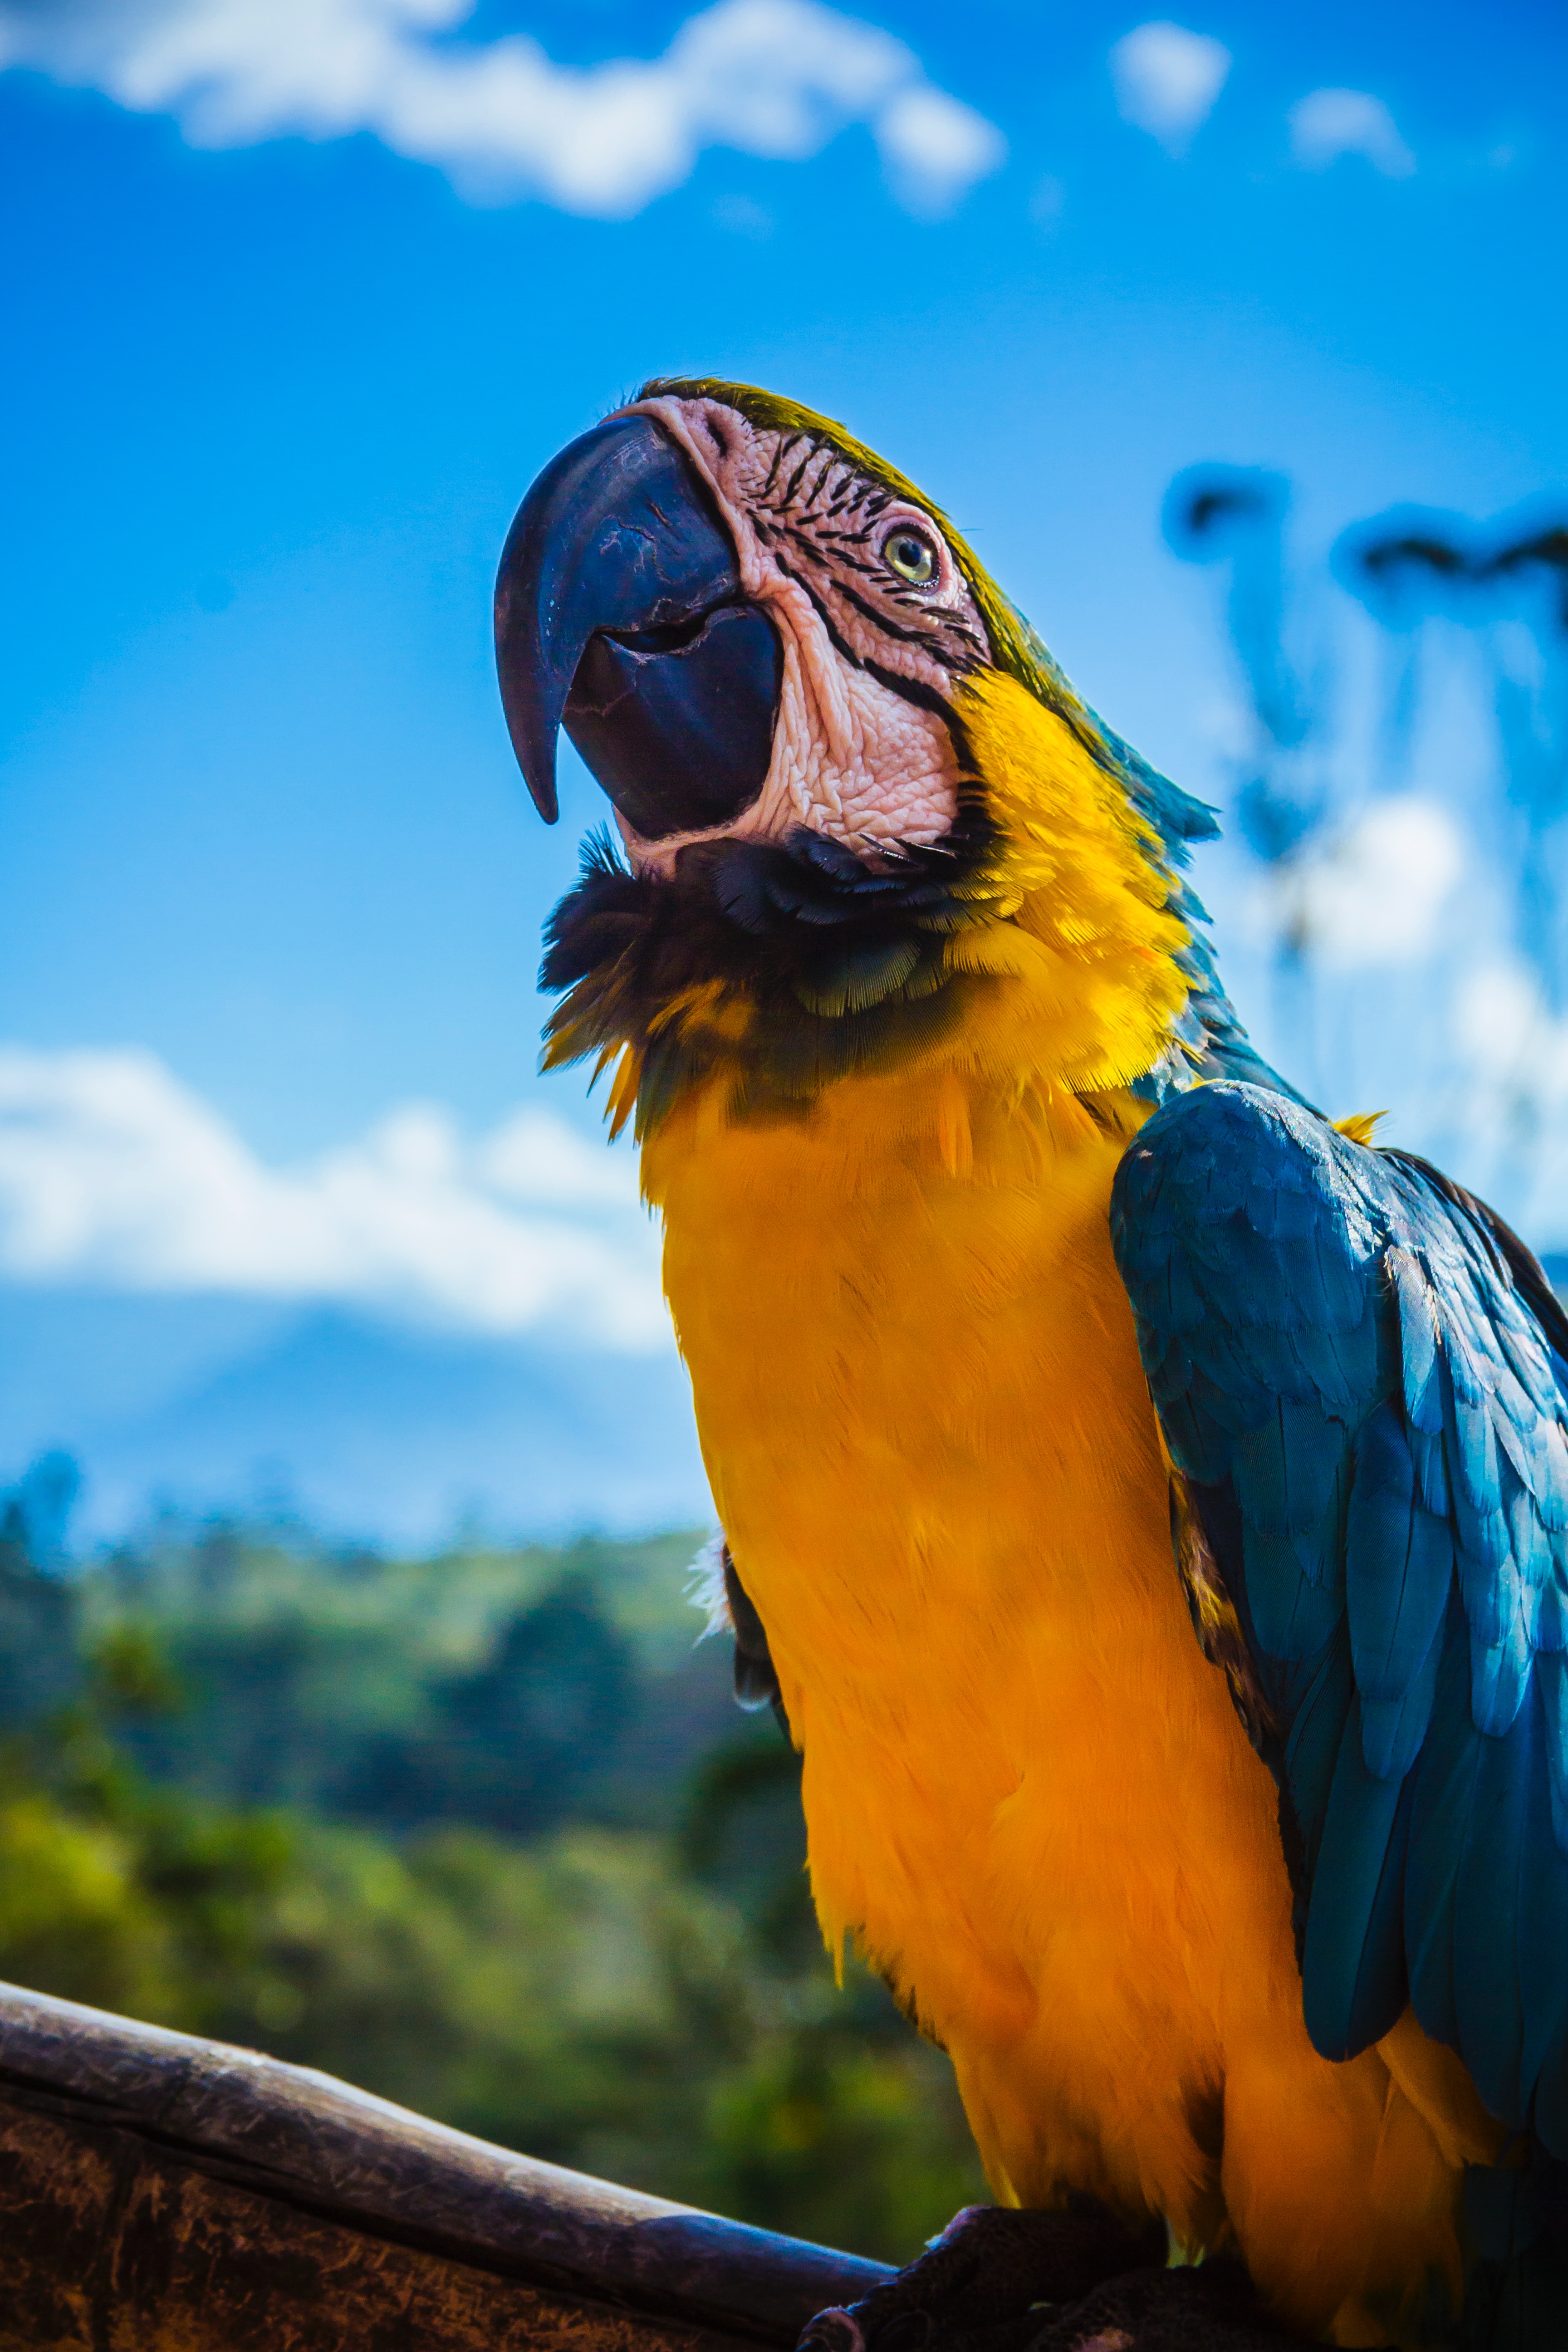 parrots, animals, bird, beak, color, macaw